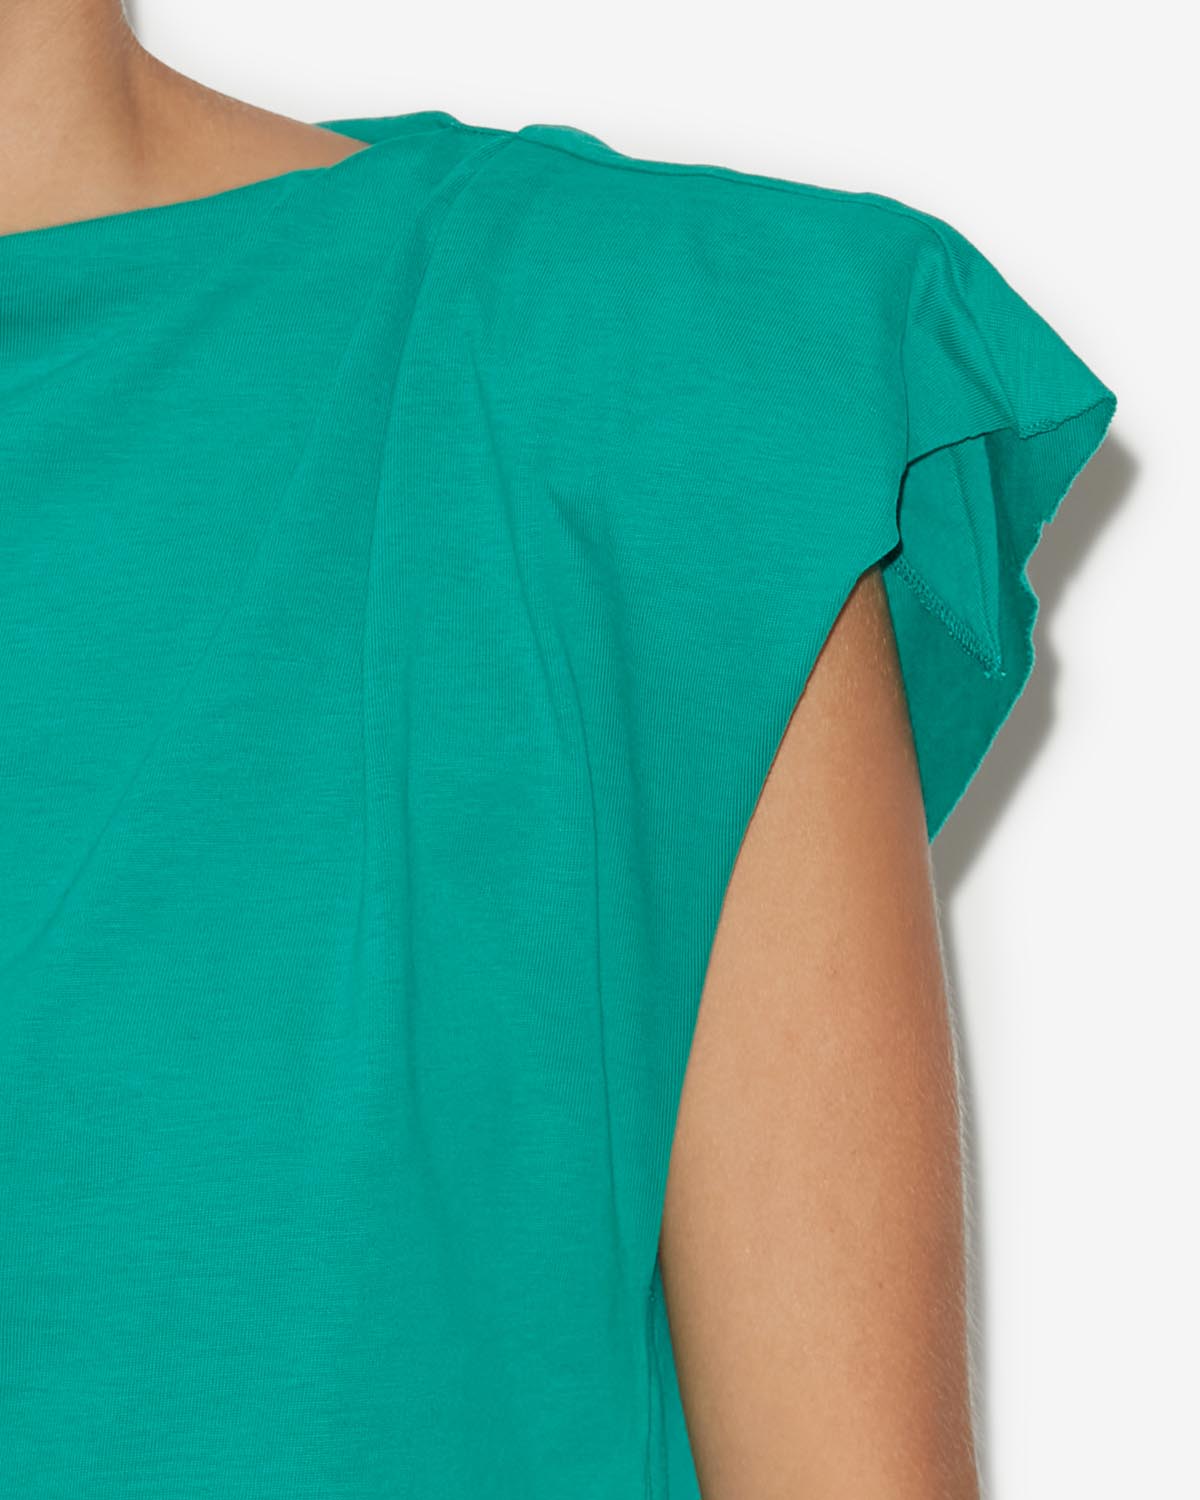 Sebani 티 셔츠 Woman Green 8